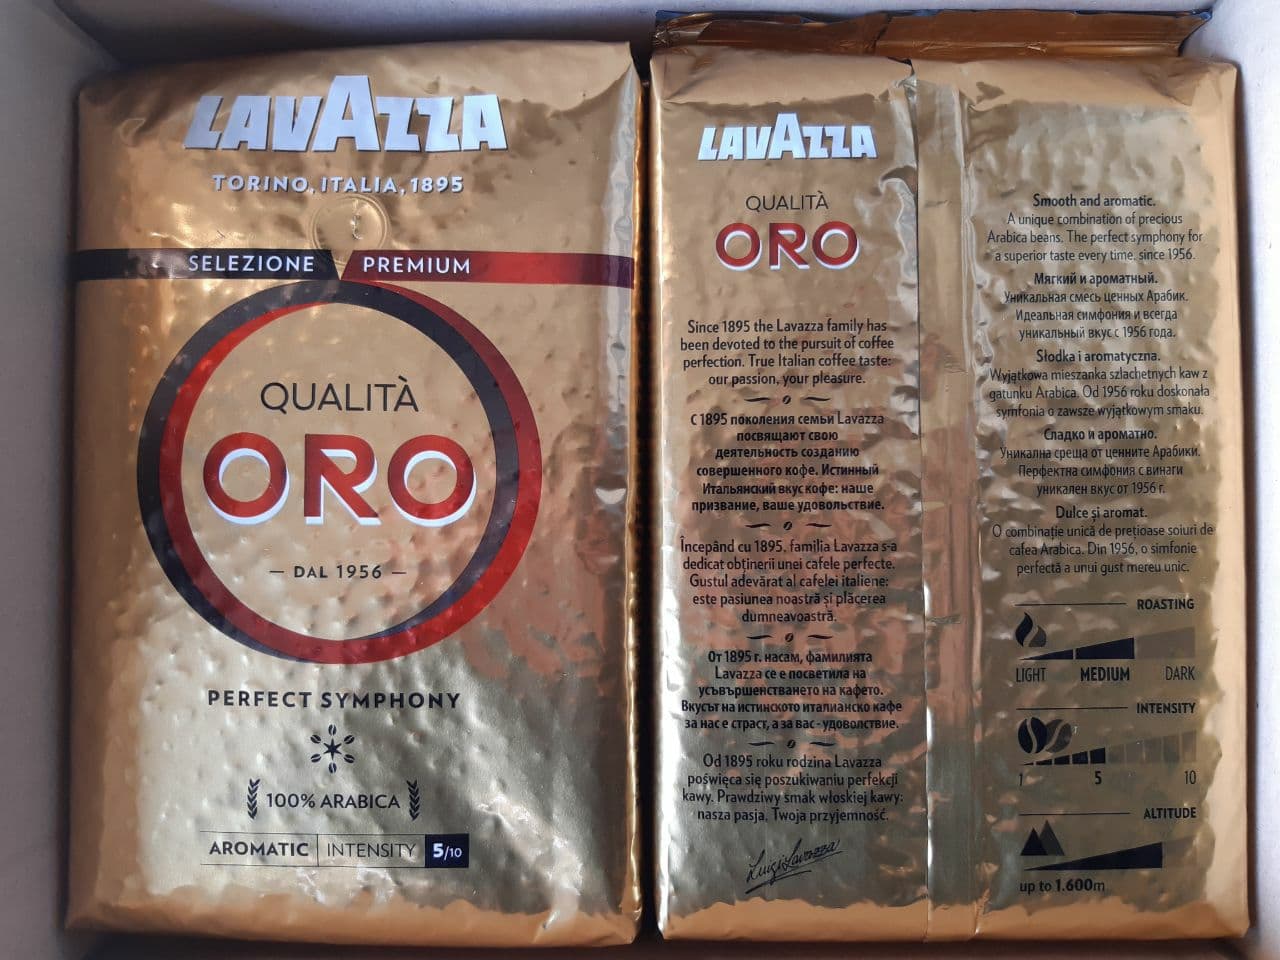 Pupiņu kafija "LAVAZZA" Qualita Oro Perfect Symphony